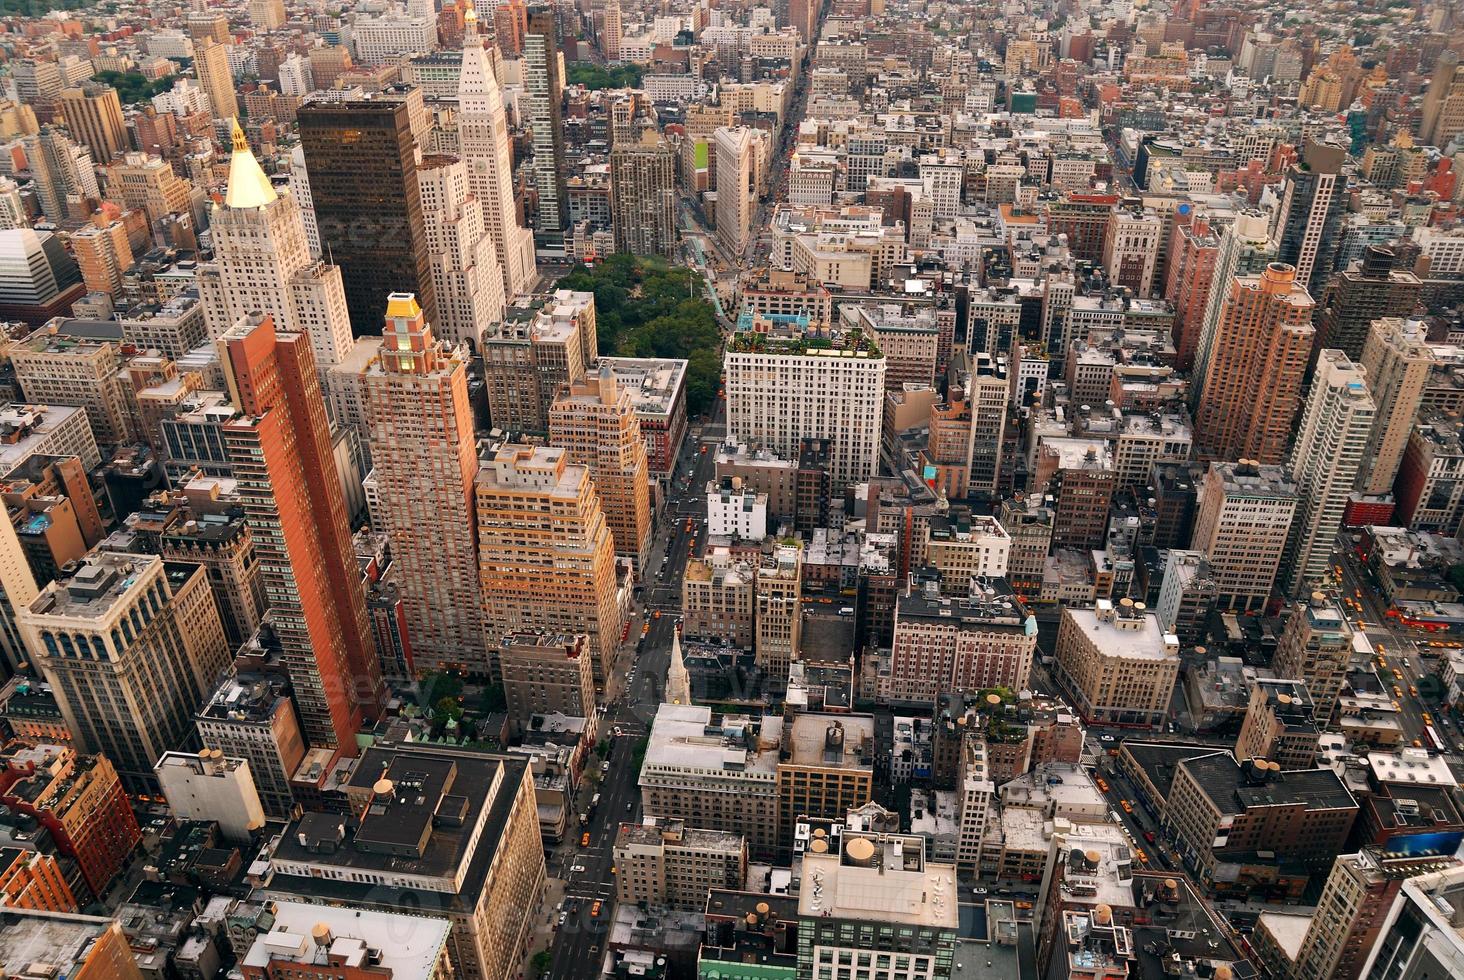 Luftaufnahme der Skyline von New York City foto